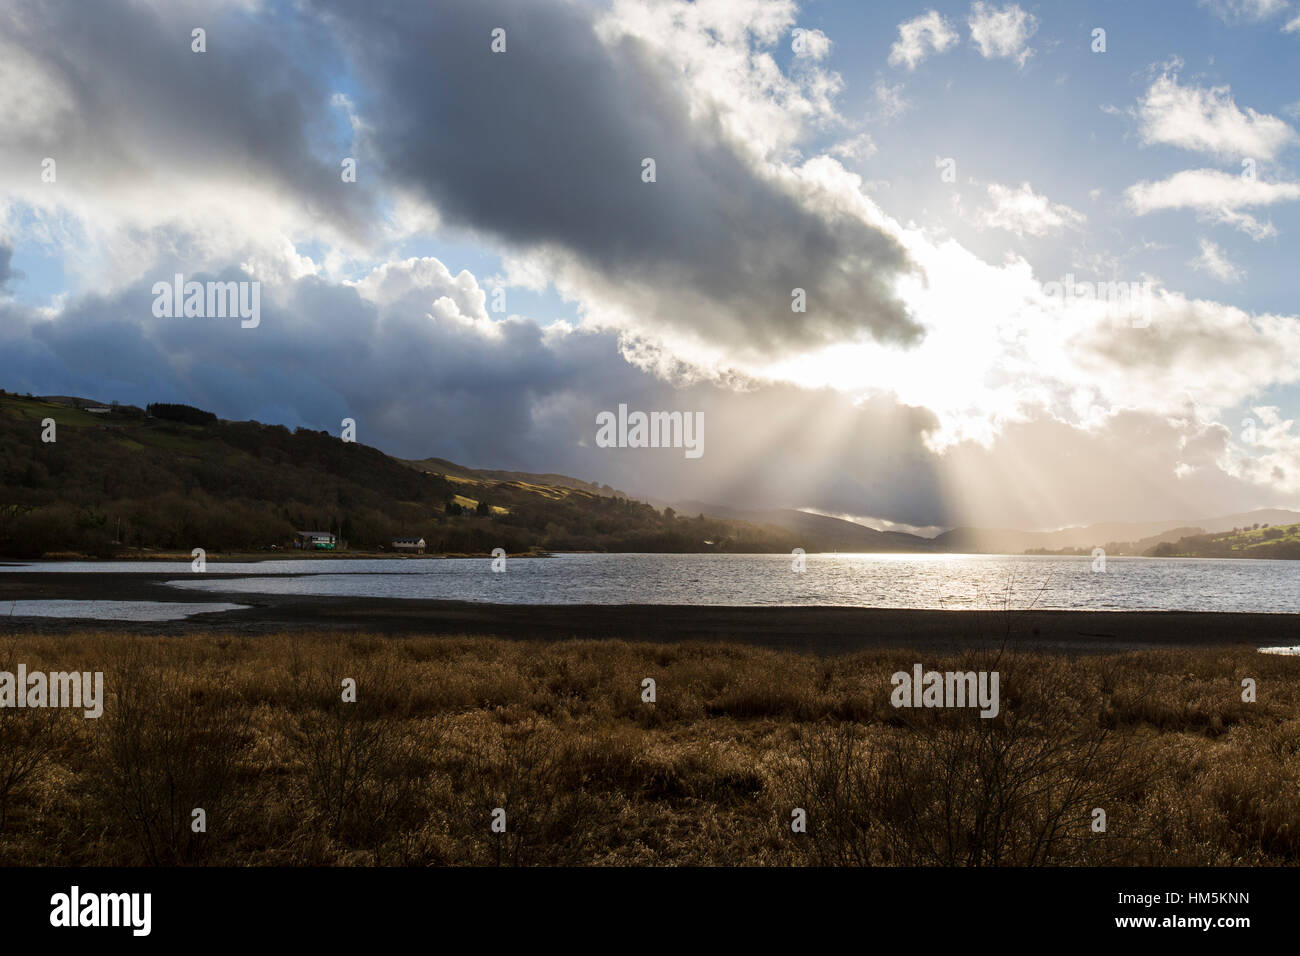 Lake Bala, also known as Llyn Tegid in Gwynedd, Wales. Stock Photo